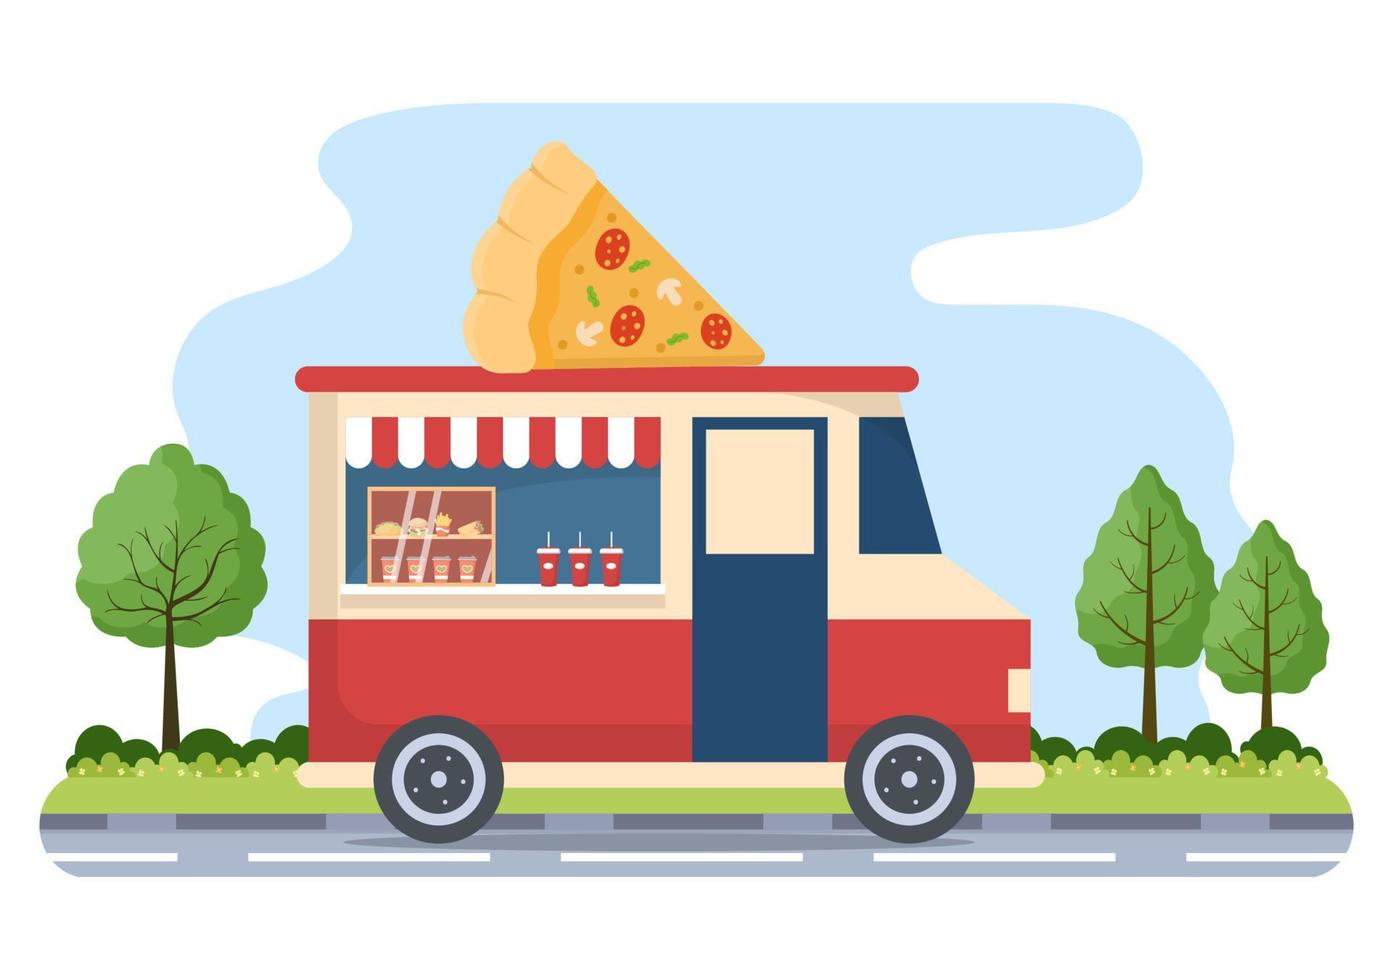 camión de comida y calle al aire libre que sirve comida rápida como pizza, hamburguesa, perrito caliente o tacos en una ilustración plana de carteles de dibujos animados vector